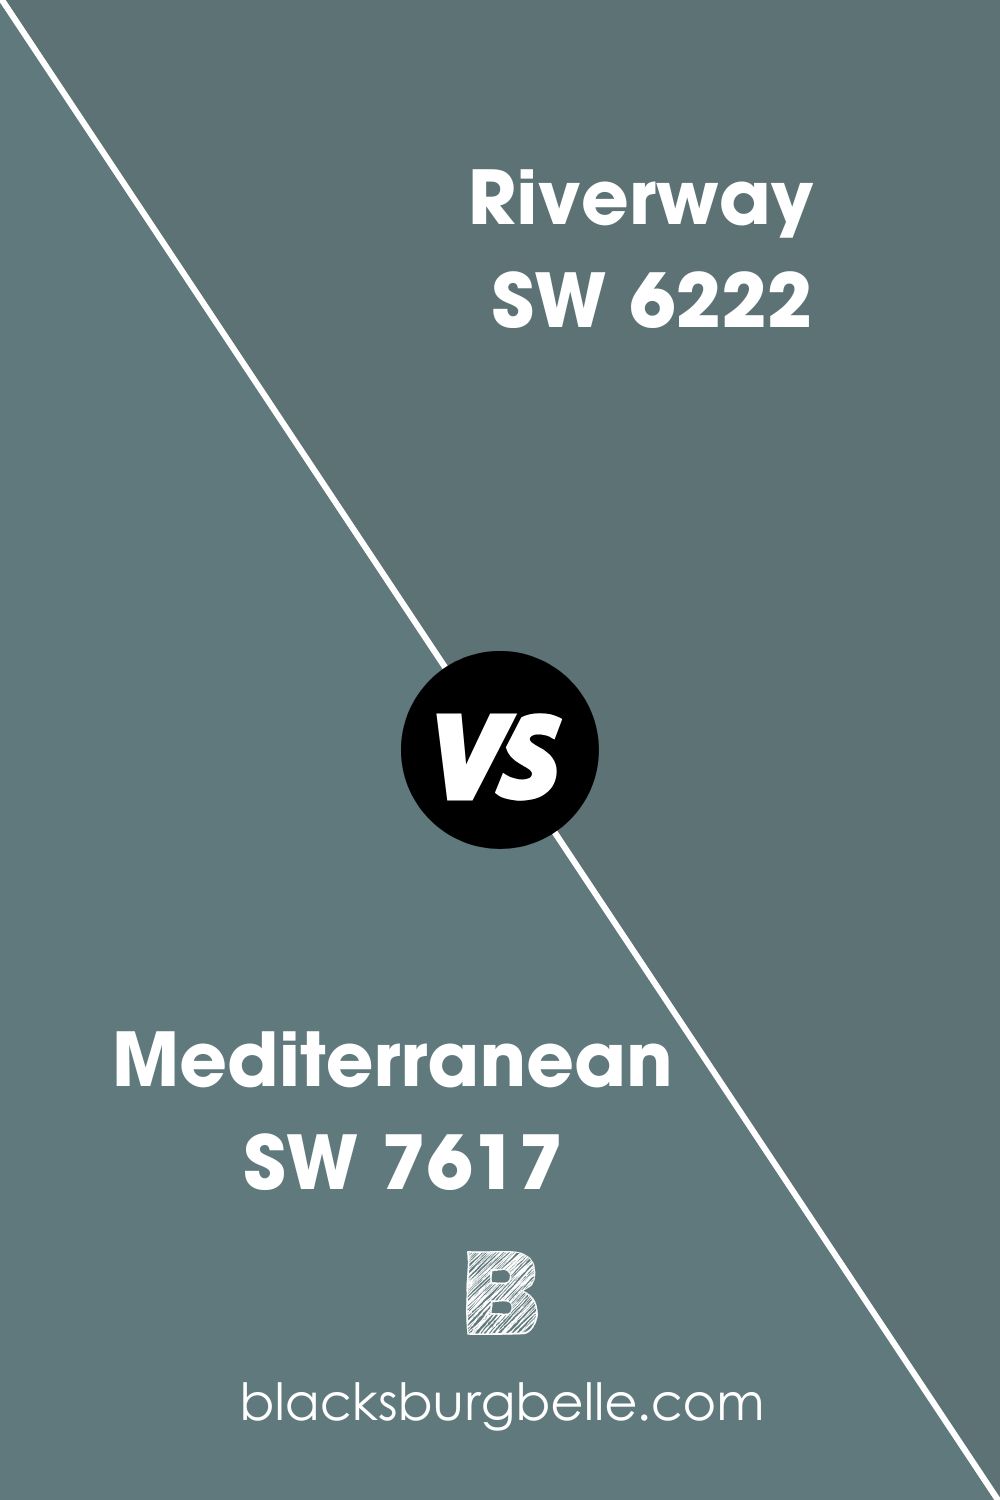 Mediterranean SW 7617 